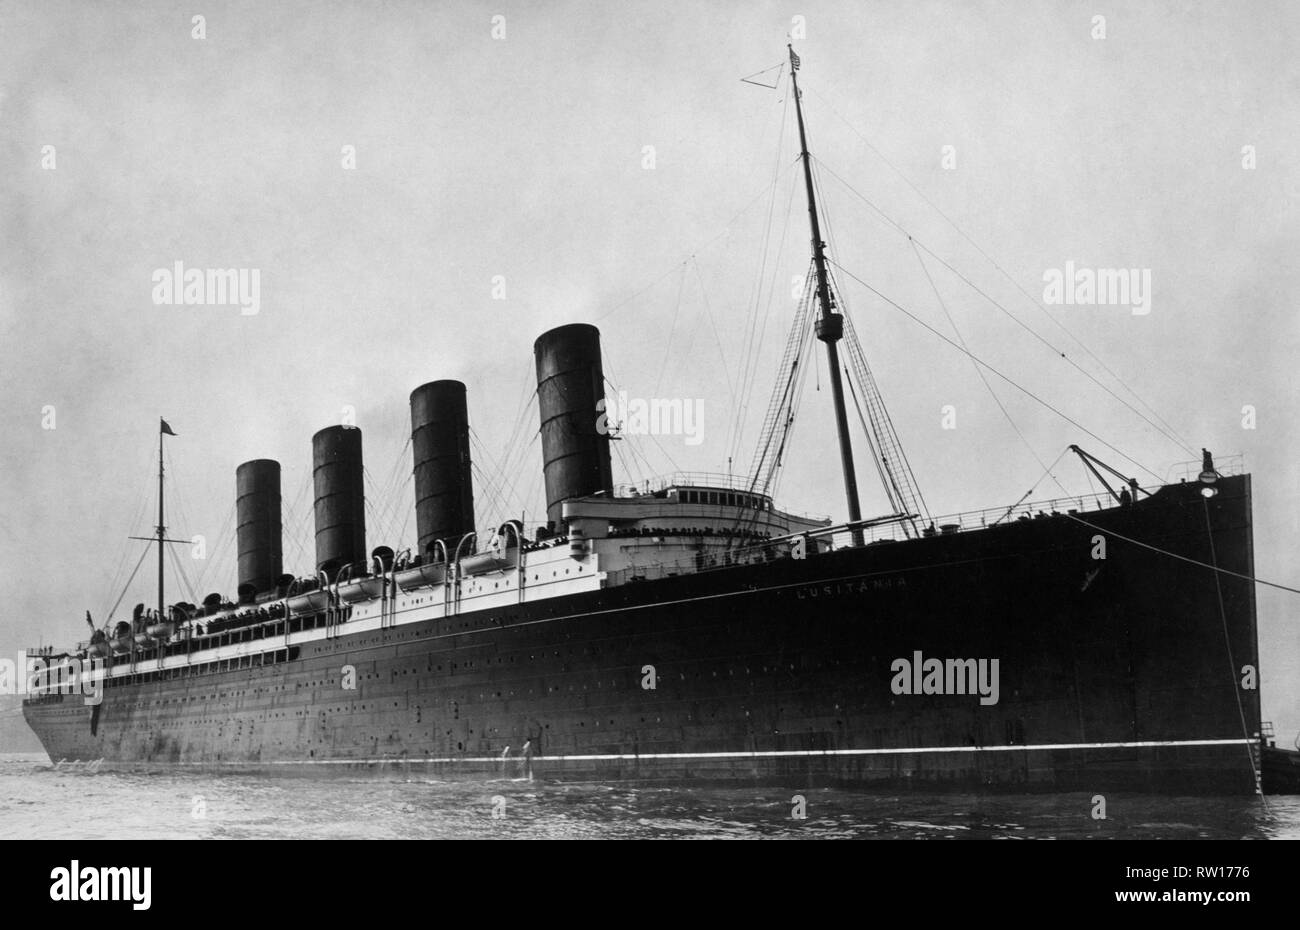 Paquebot britannique Lusitania RMS brièvement et le plus grand navire coulé par un passneger uboat le 7 mai 1915 au large de la côte sud de l'irlande libre mis à jour à l'aide de techniques de retouche et de restauration numérique Banque D'Images